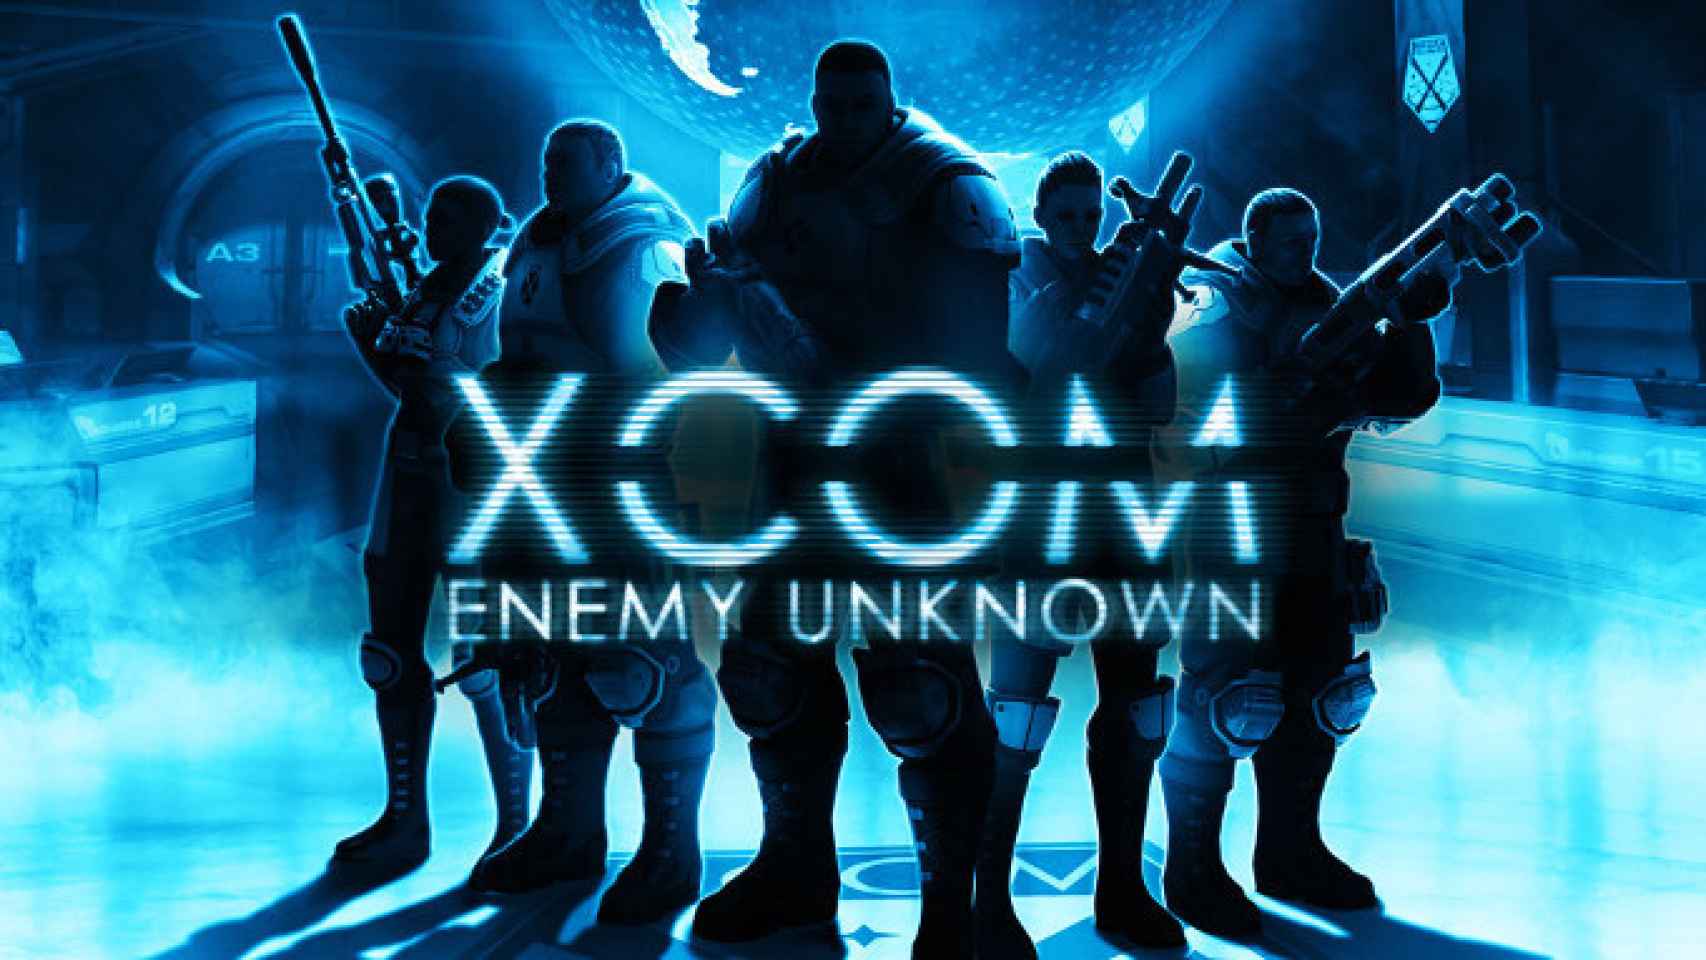 XCOM Enemy Unknown llega a Android con aliens, estrategia por turnos y mucha acción